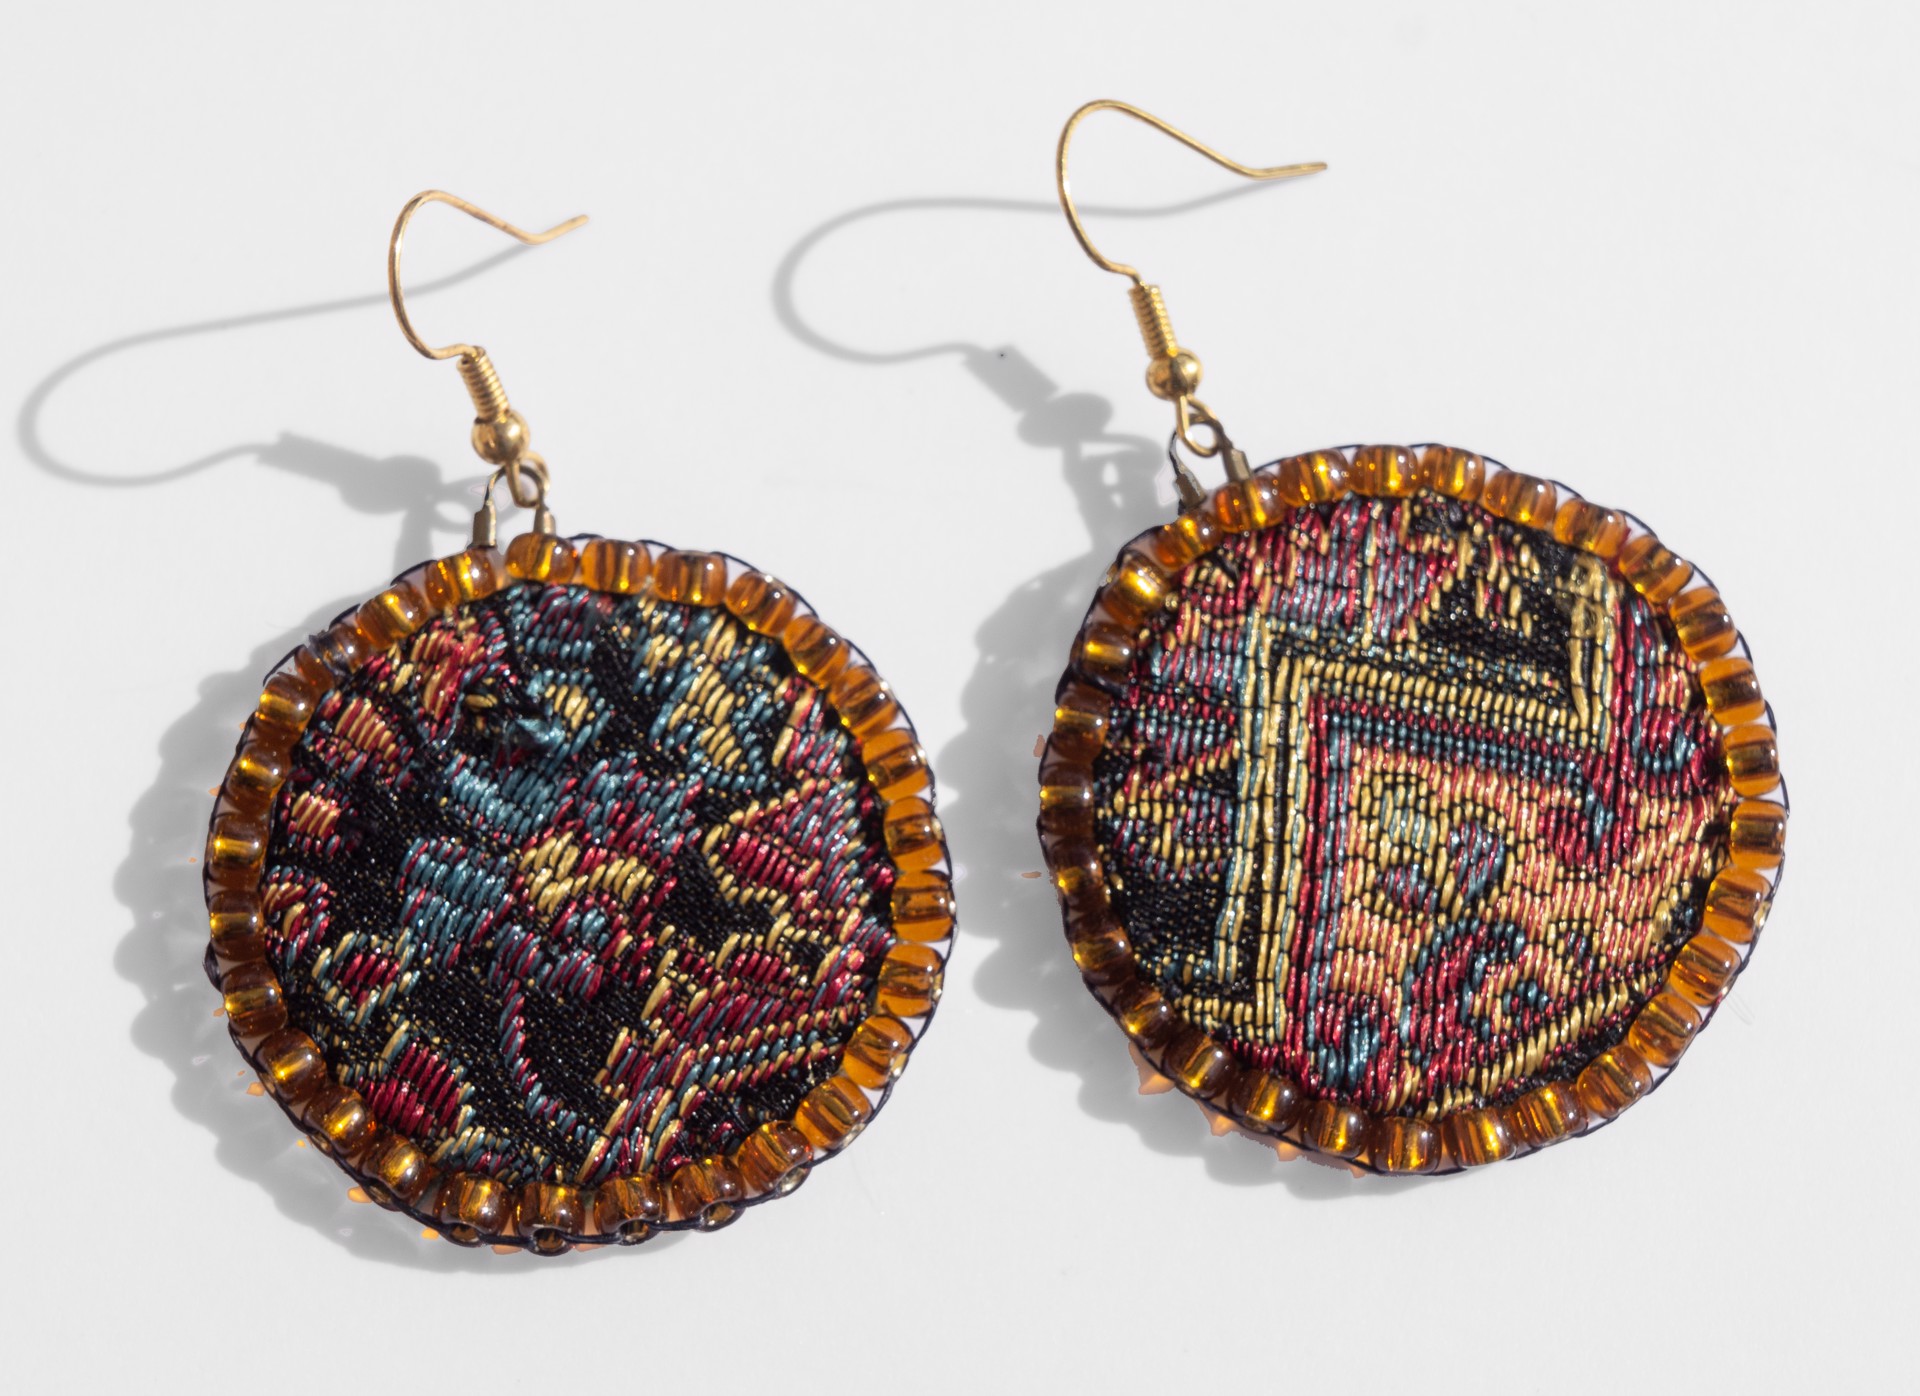 Tapestry earrings by Hattie Lee Mendoza